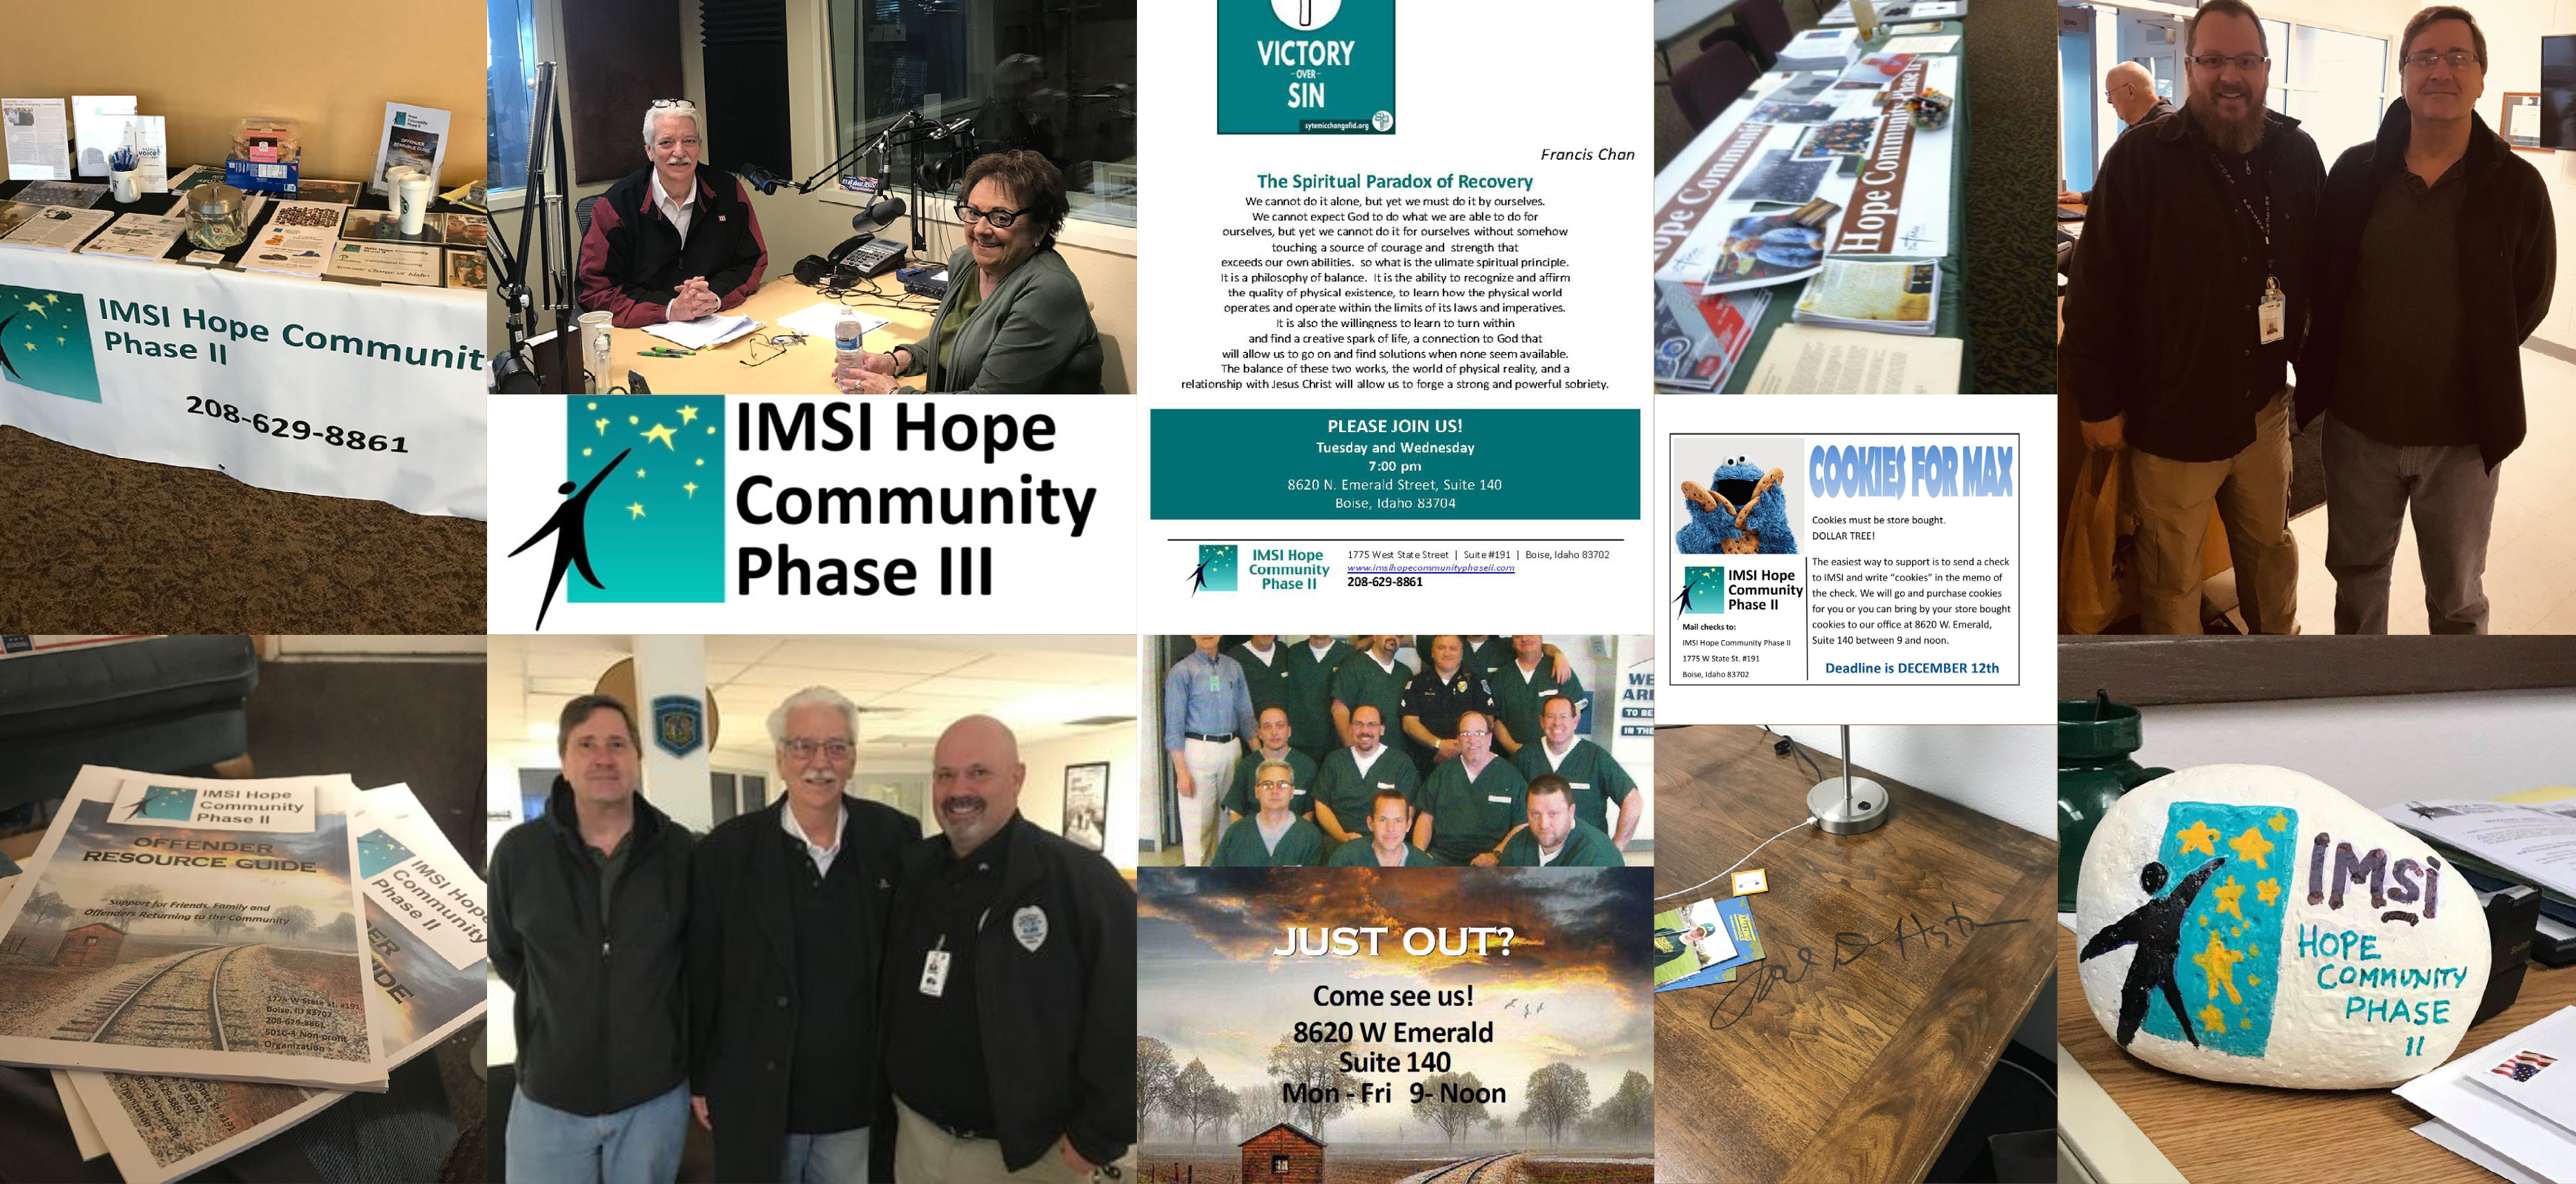 IMSI Hope Community Phase II: 2006-2023